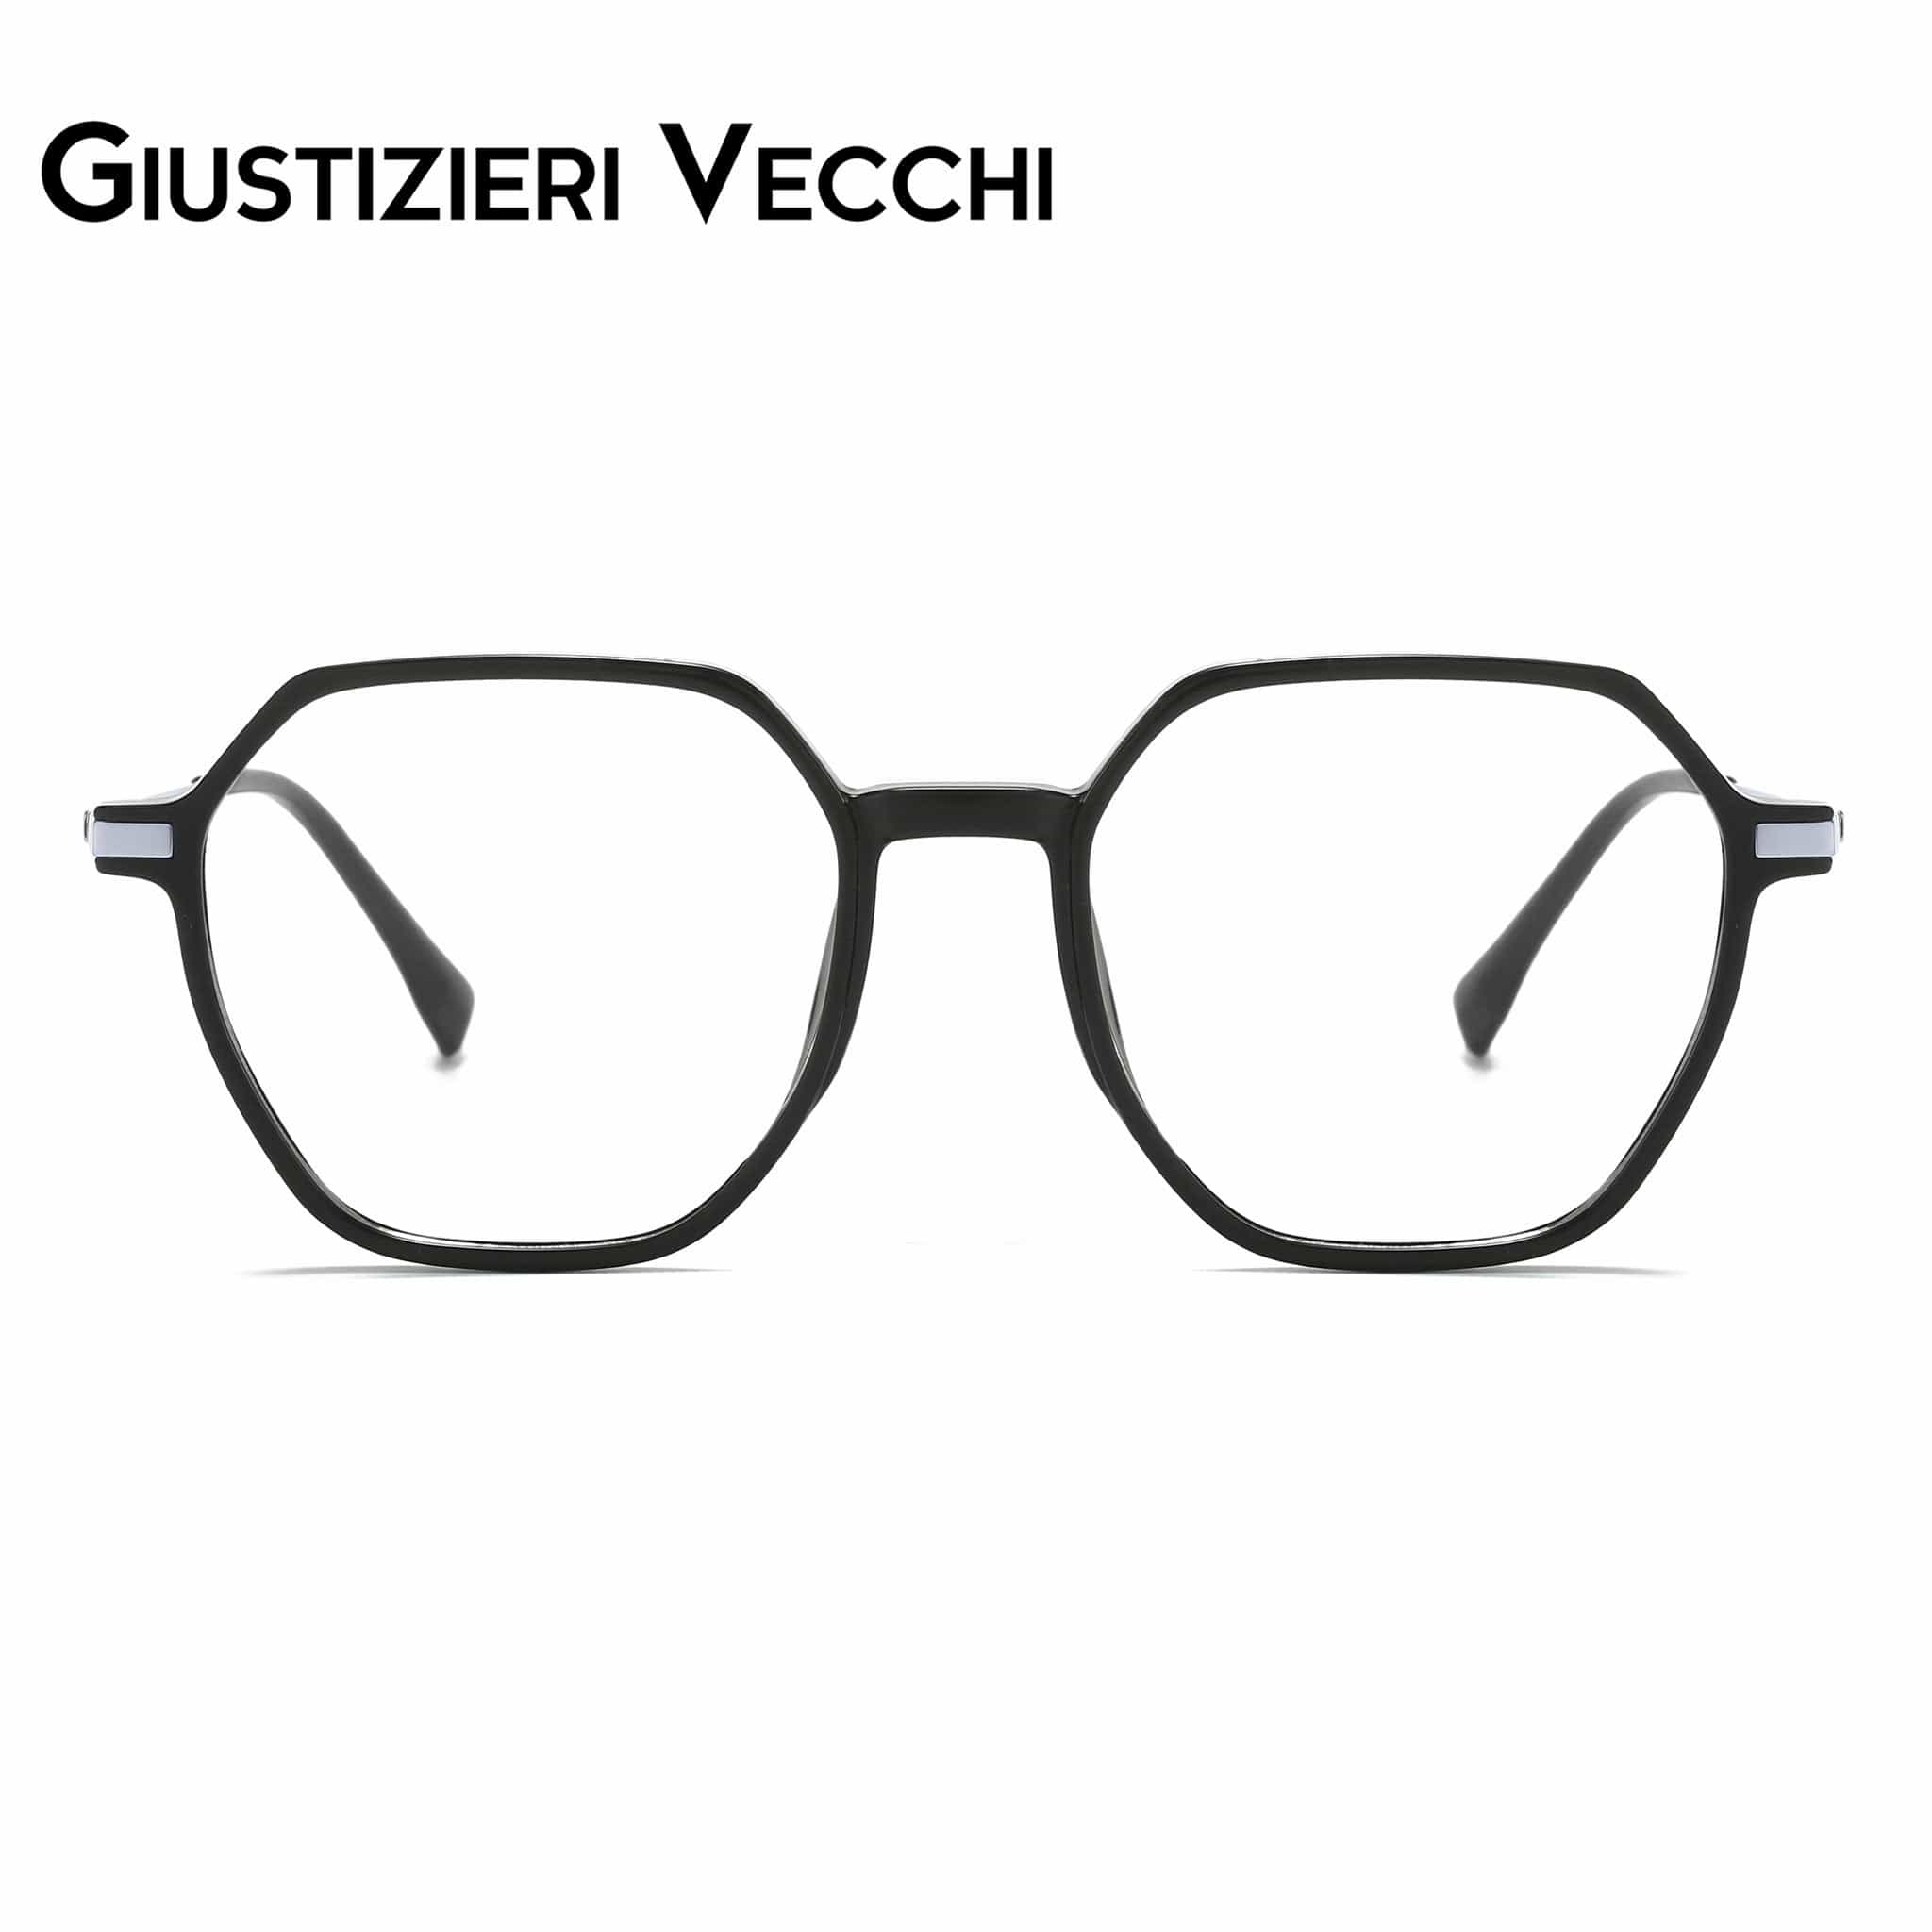 GIUSTIZIERI VECCHI Eyeglasses Medium / Black with Silver IceRider Uno